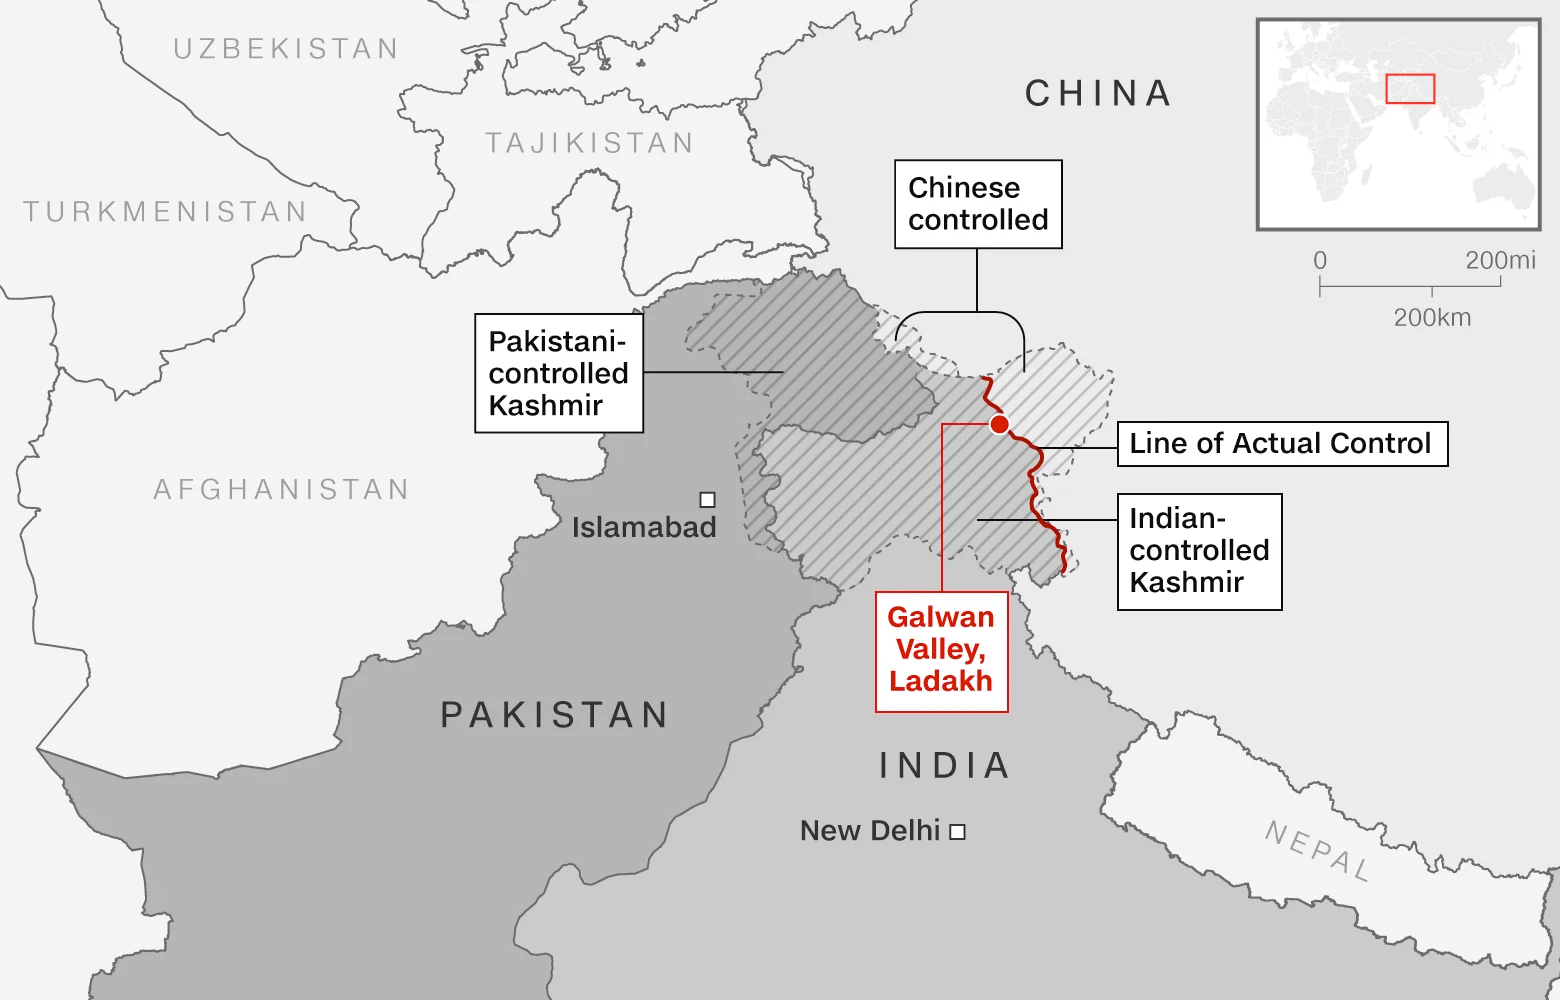 Спорный граница. Пограничный конфликт Индии и Китая 2020. Индо-китайский пограничный конфликт (2020). Граница Индии и Китая конфликт на карте. Спорная территория между Индией и Пакистаном и Китаем.